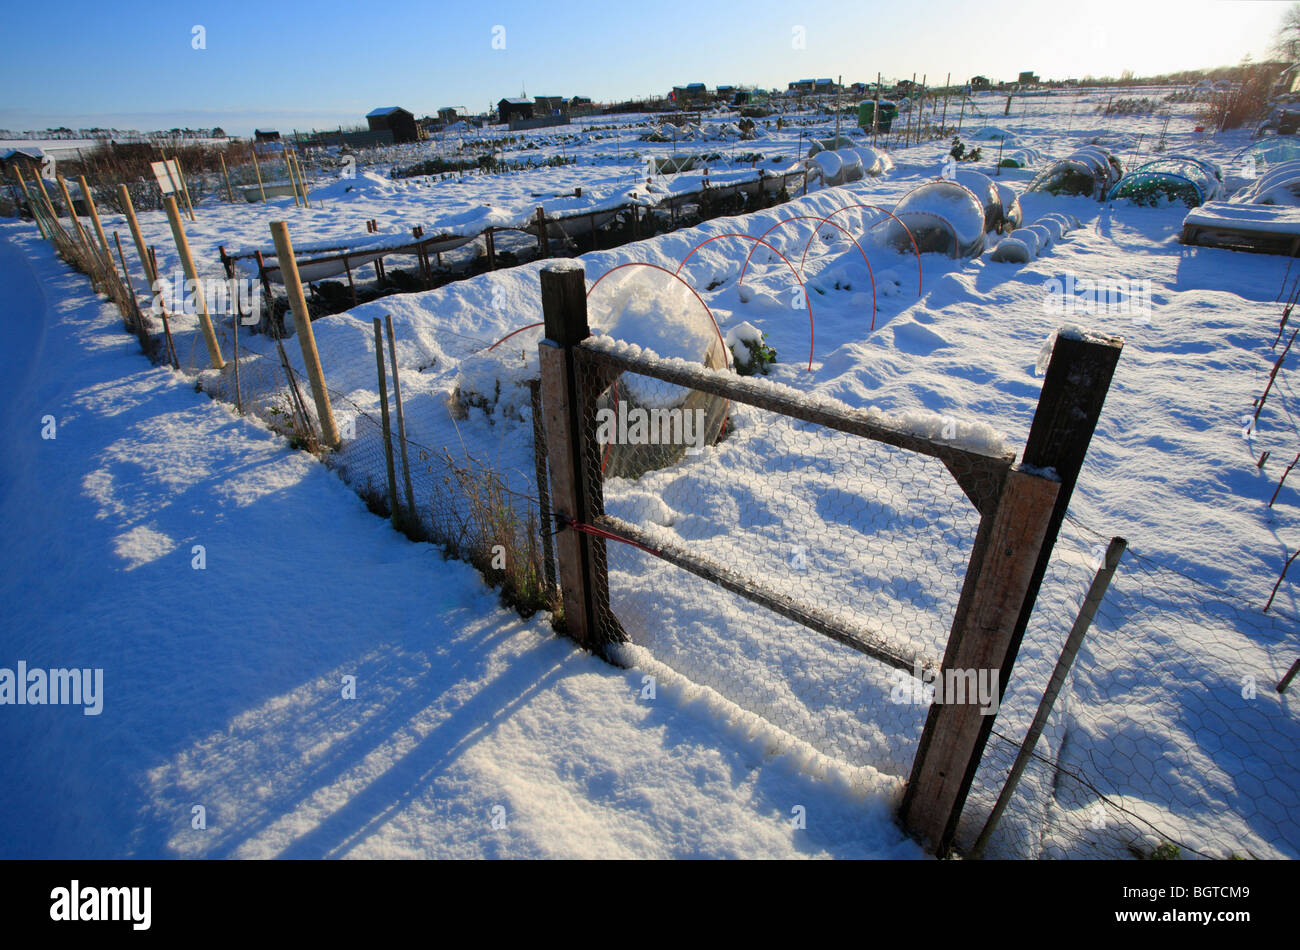 Assegnazioni in inverno con neve a Heacham, Norfolk. Foto Stock